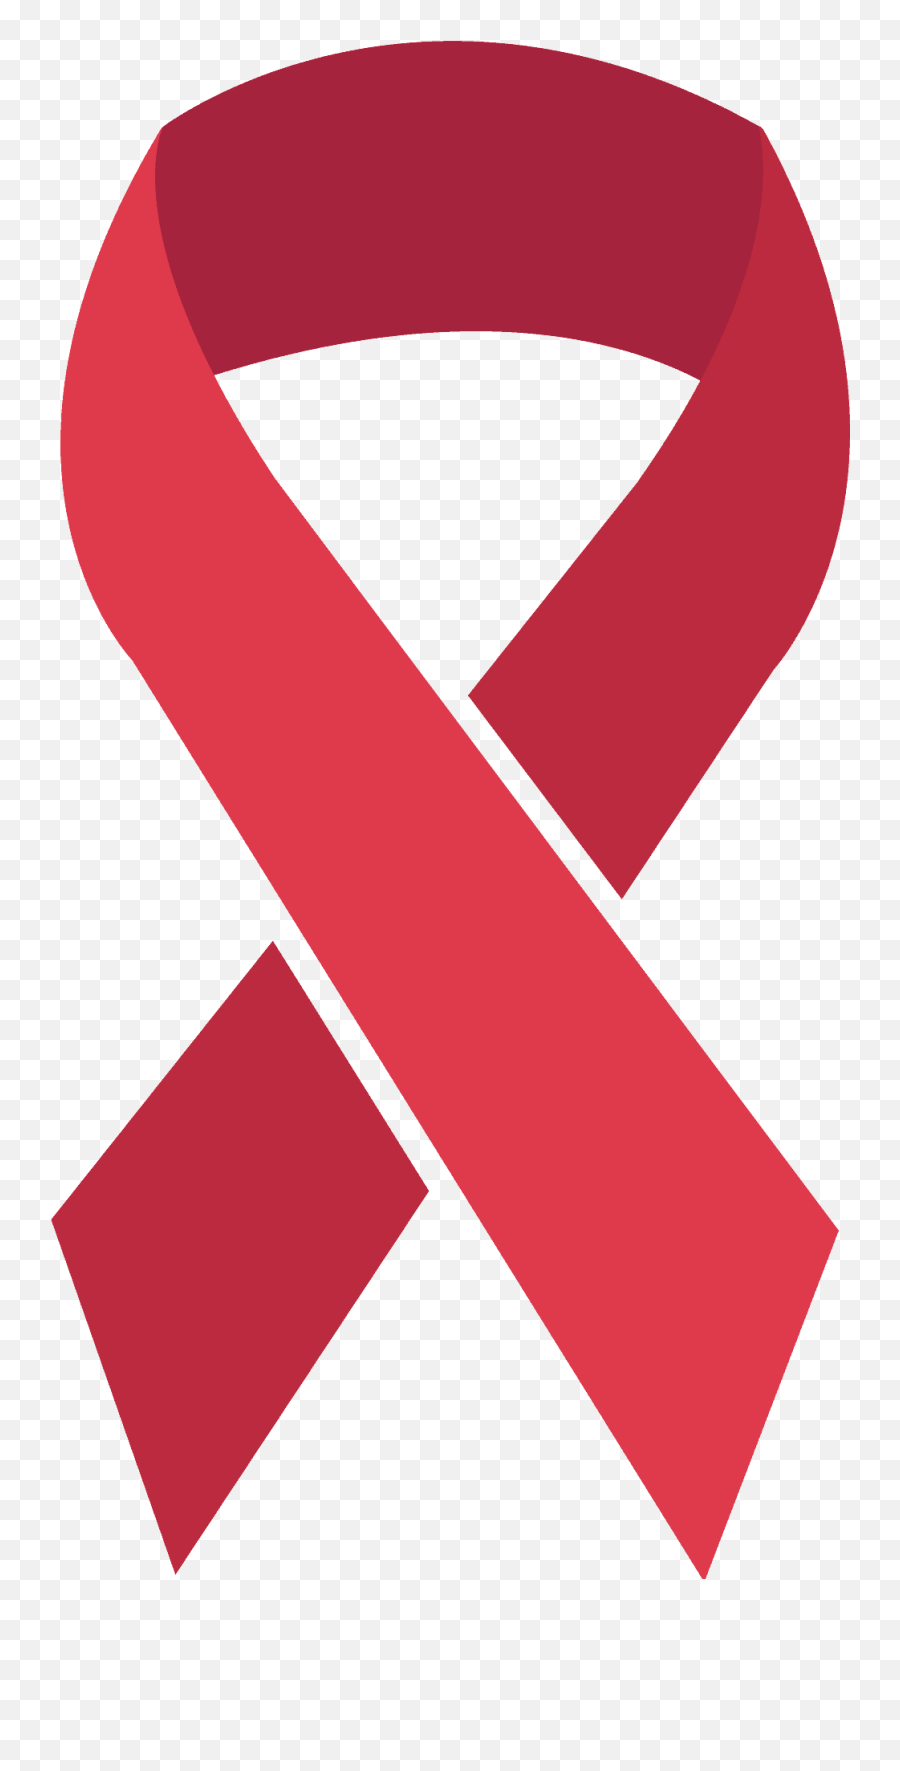 Reminder Ribbon Emoji Clipart - Stock X Logo Vector,Ribbon Emoji